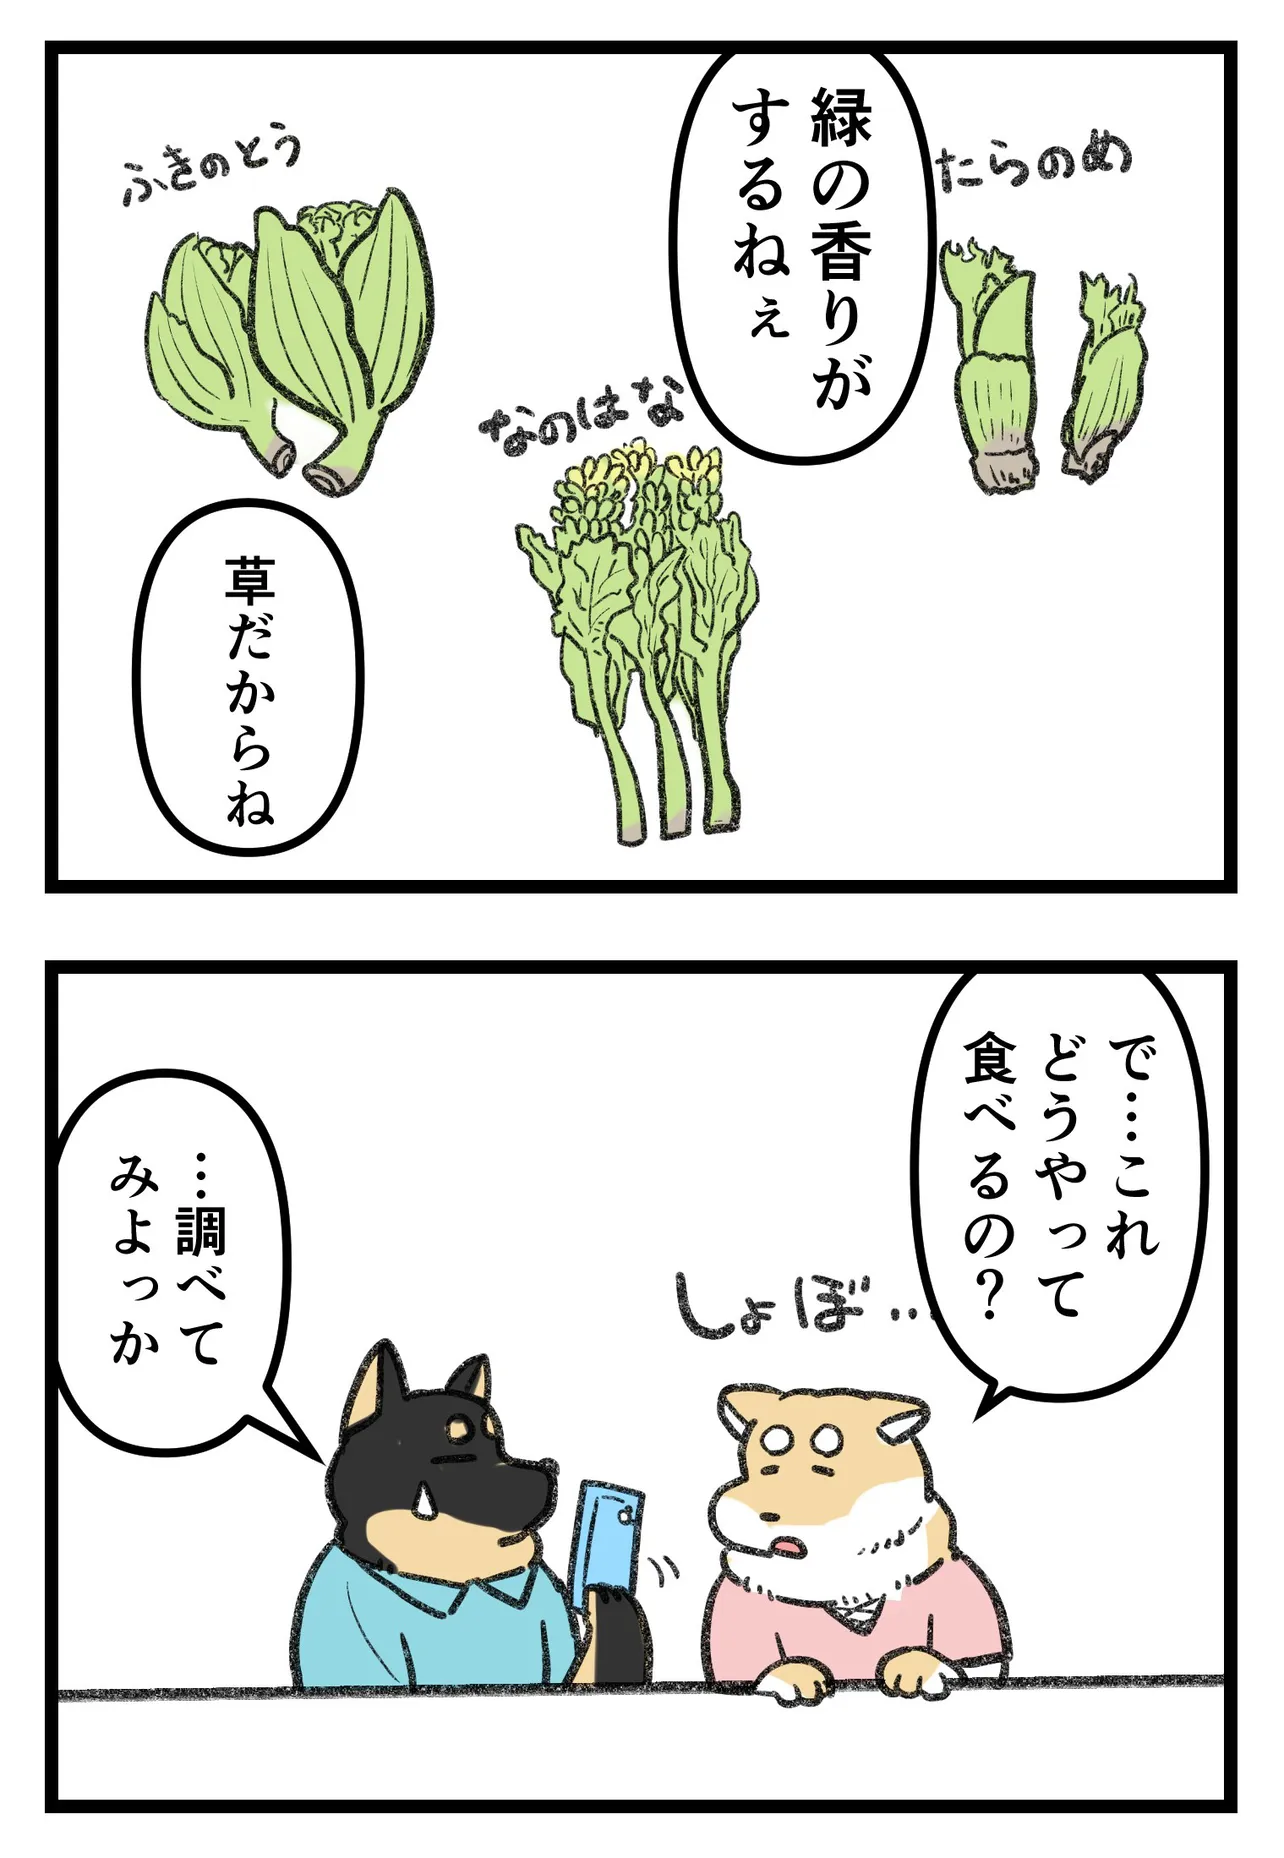 『柴犬二匹が山菜の天ぷらを作って食べる話』(4/16)